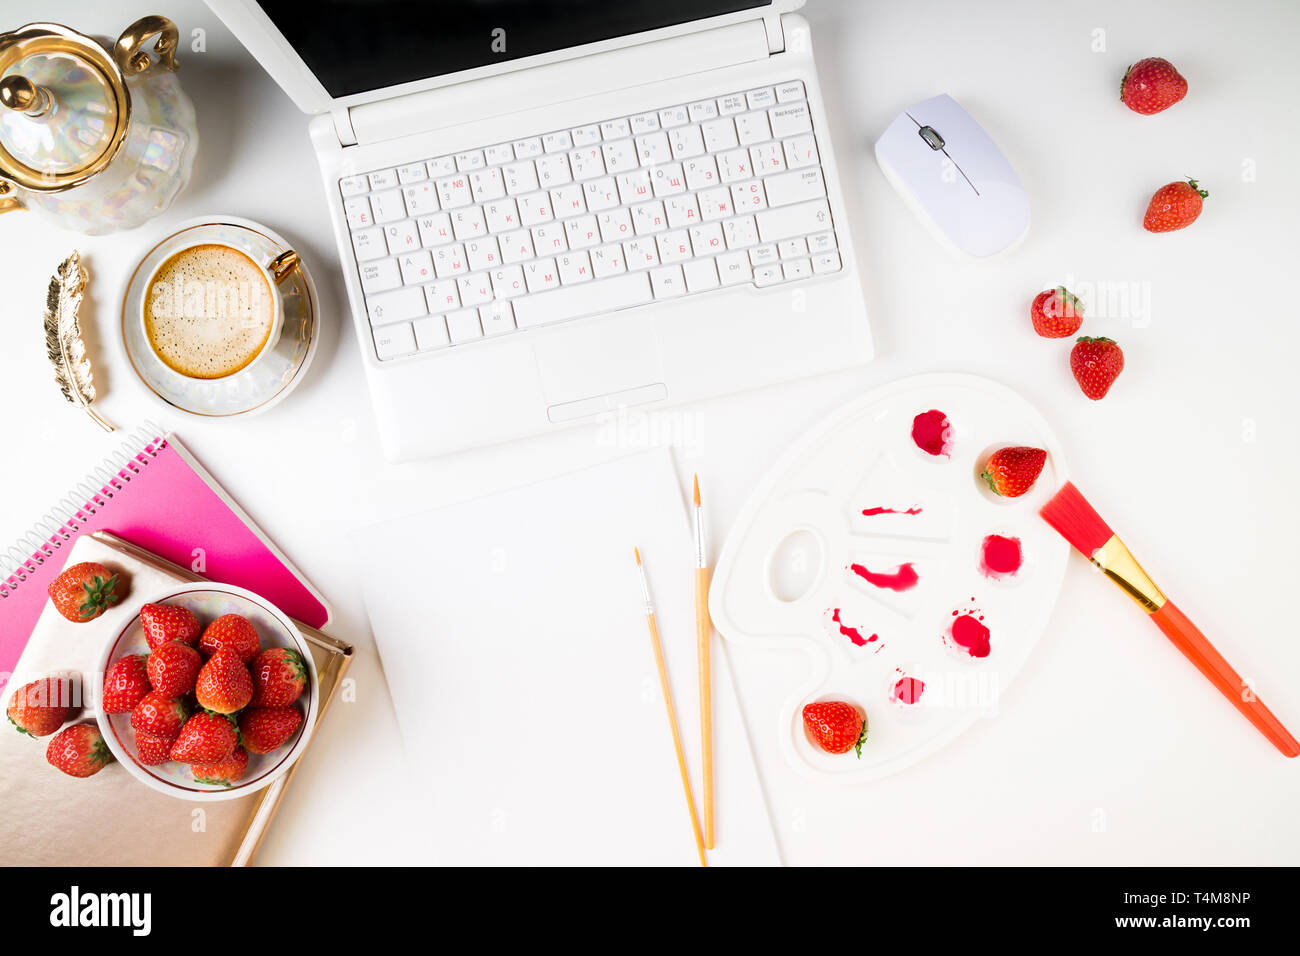 Flach Arbeitsbereich mit Laptop, Kaffeetasse, Erdbeeren und Zubehör auf weißem Hintergrund. Ansicht von oben Artist home Arbeitsplatz. Platz kopieren Stockfoto